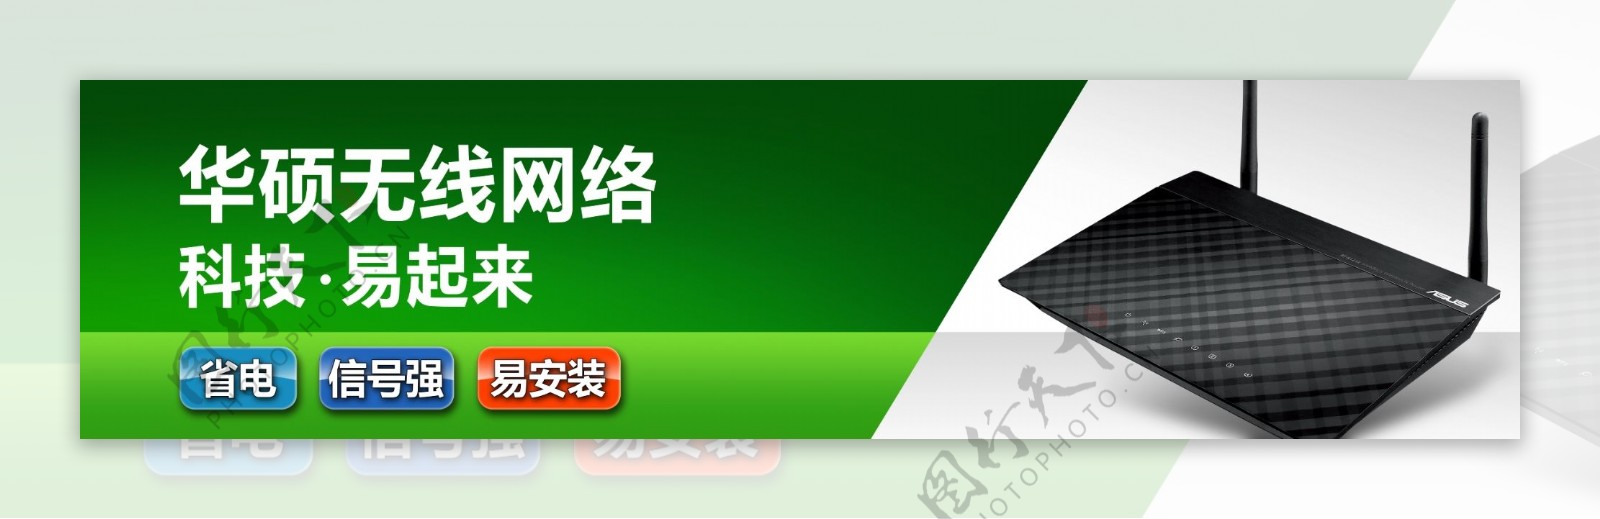 华硕2012新网络柜头图片